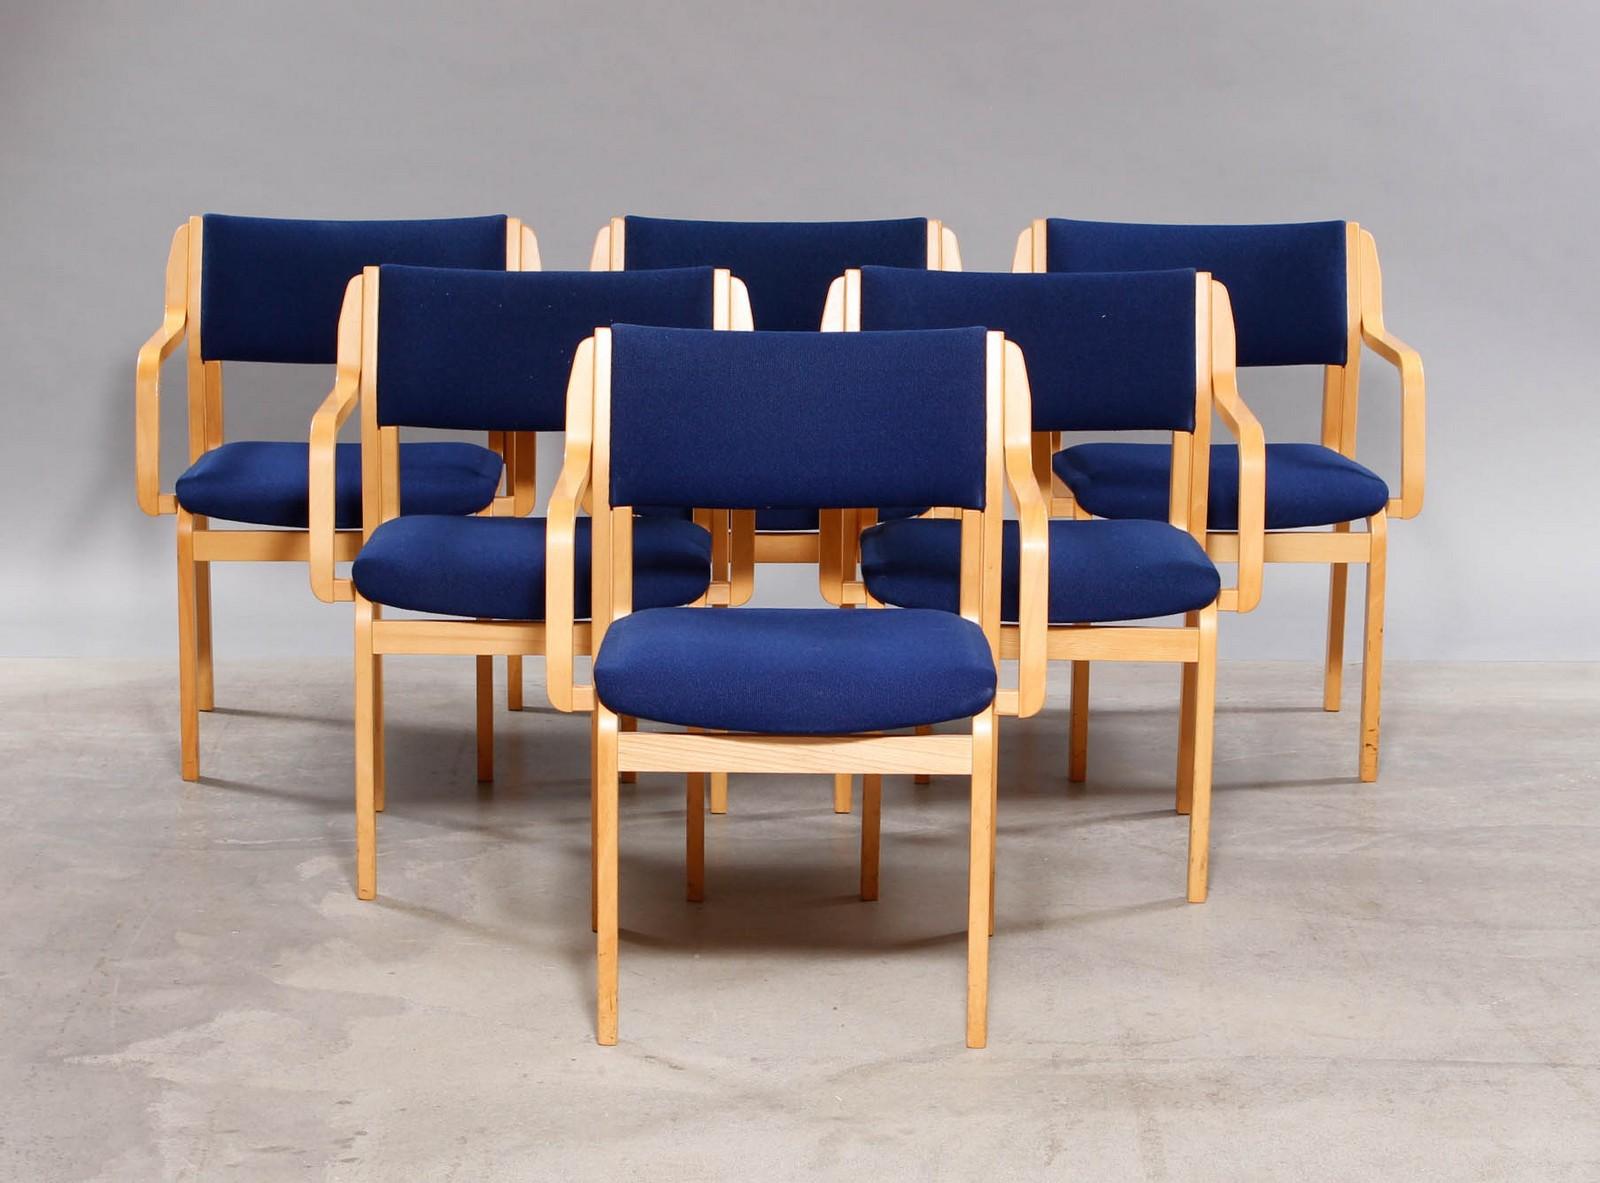 Meubles Farstrup. Six (6) chaises Farstrup furniture. Chaises de conférence en hêtre laqué poli avec accoudoirs, empilables, assise et dossier recouverts de tissu en laine bleue.